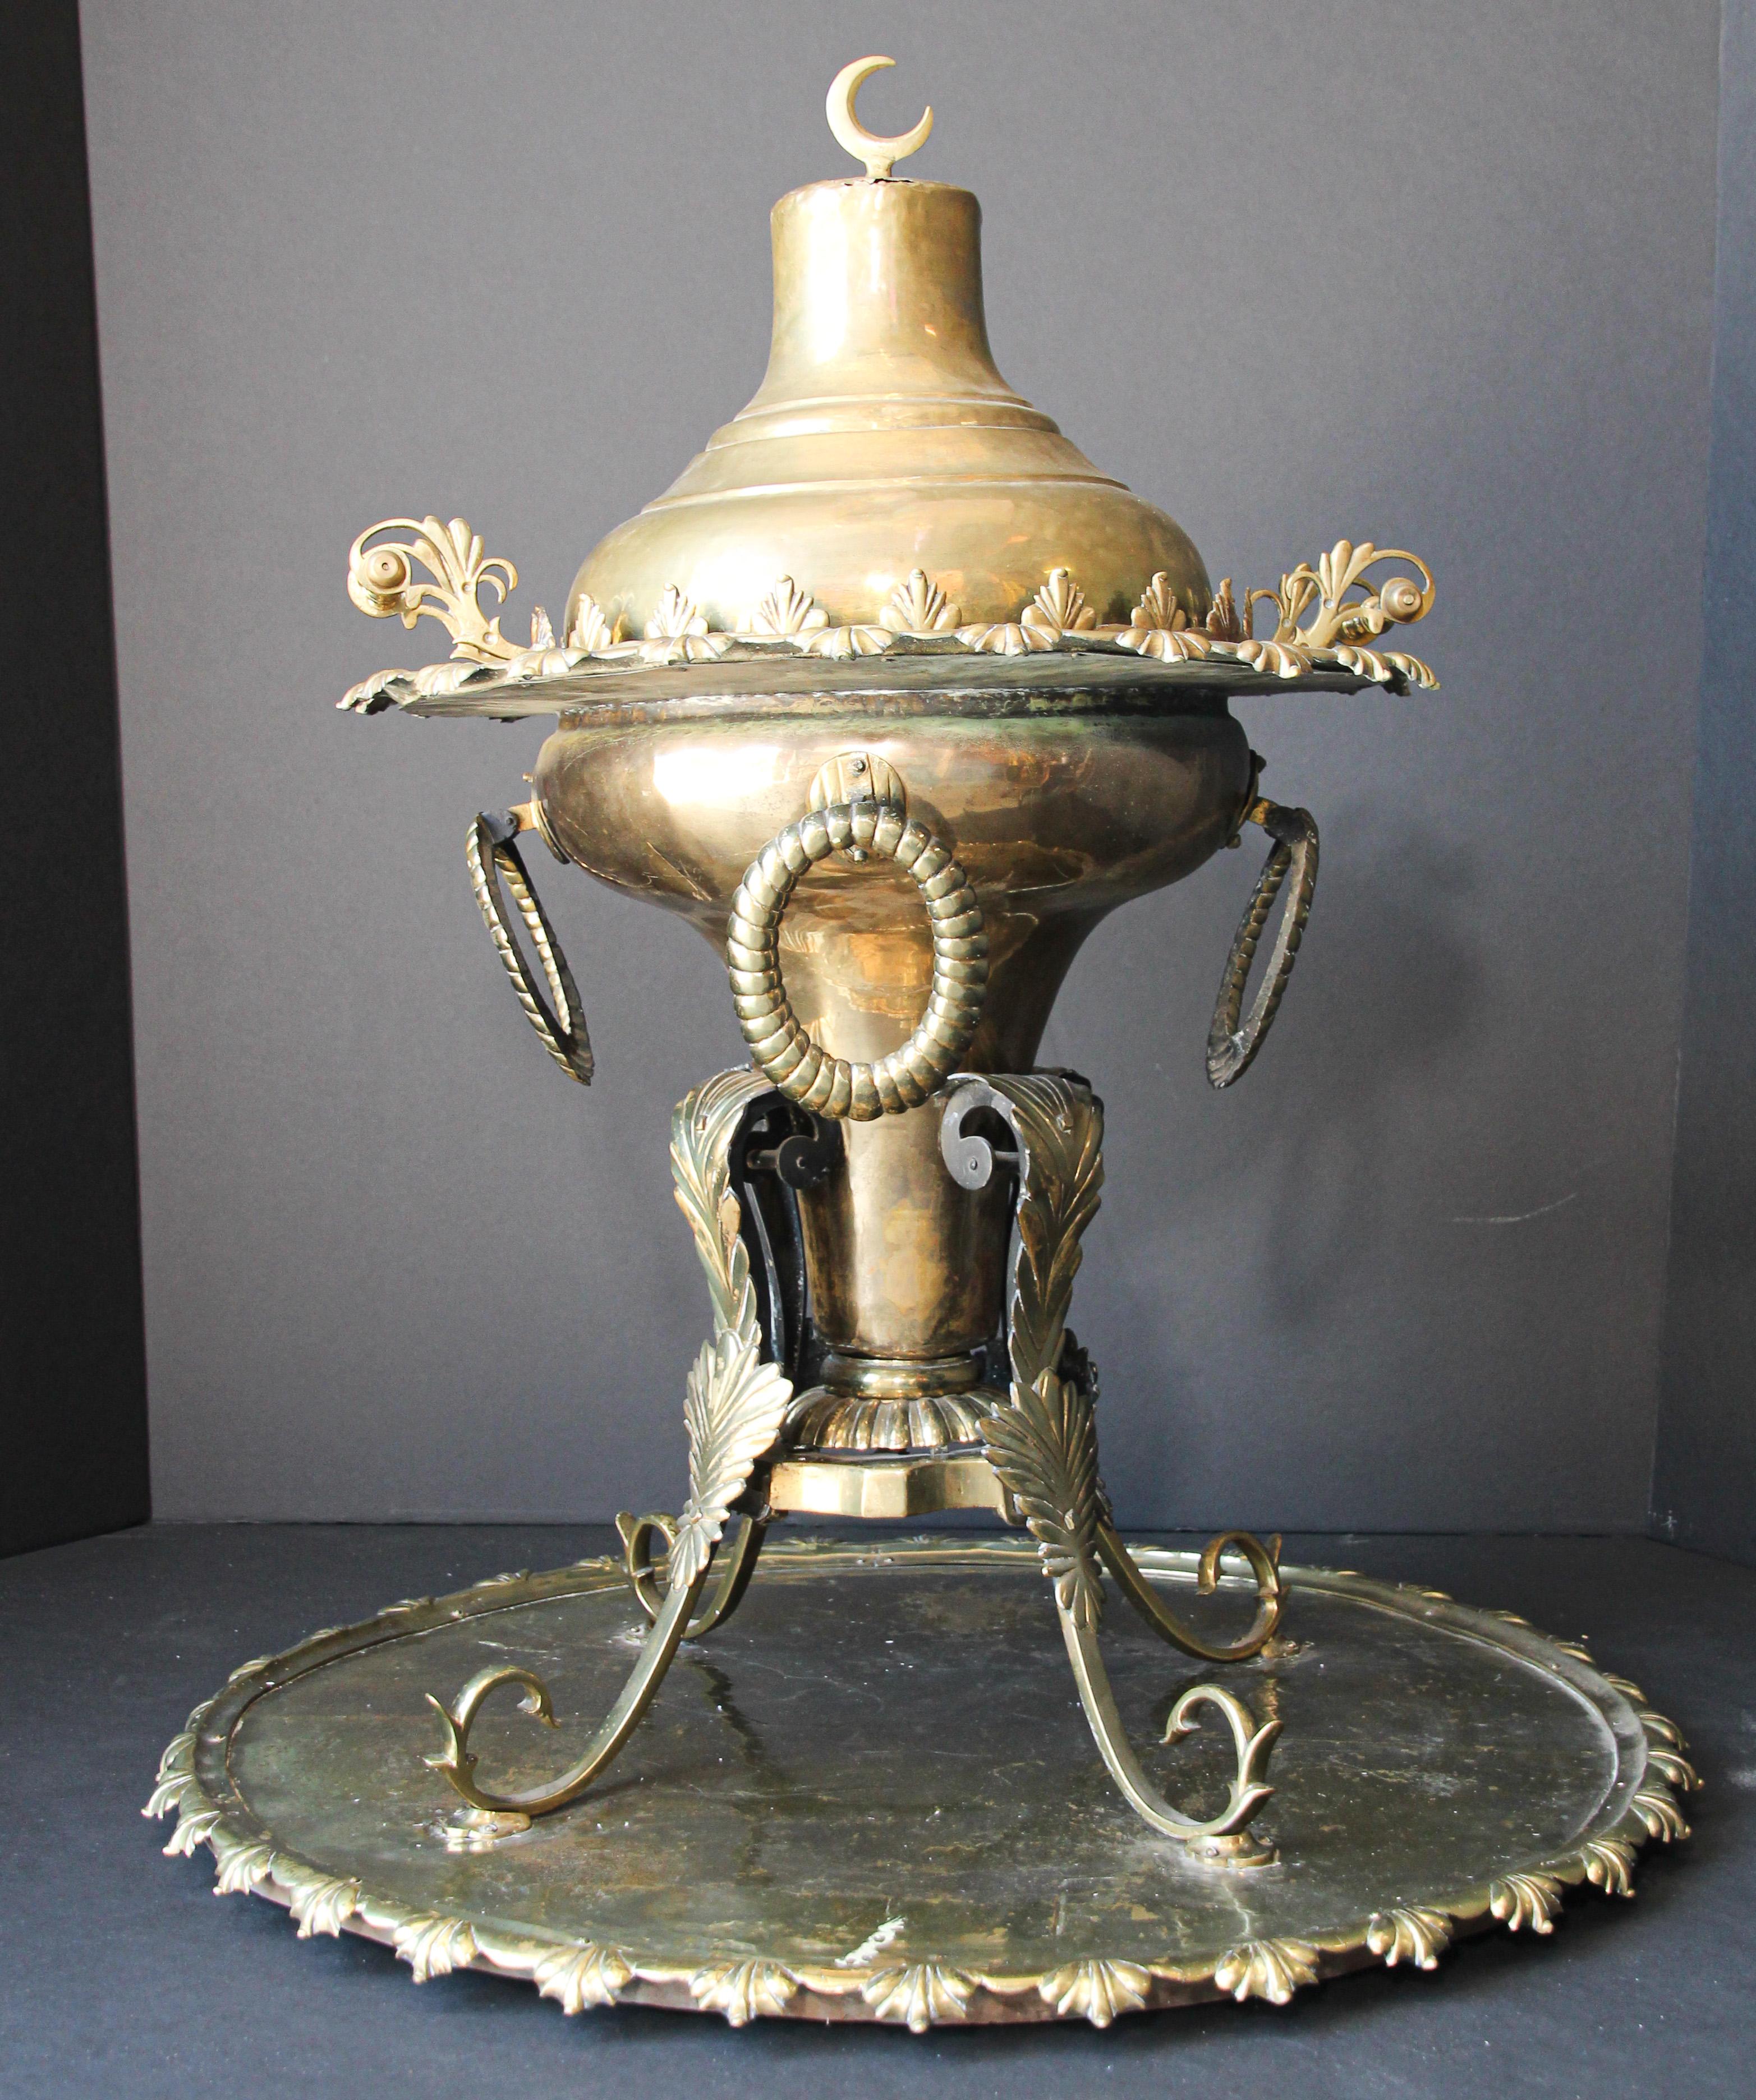 Hammered Middle Eastern Large Arabian Polished Brass Incense Burner For Sale